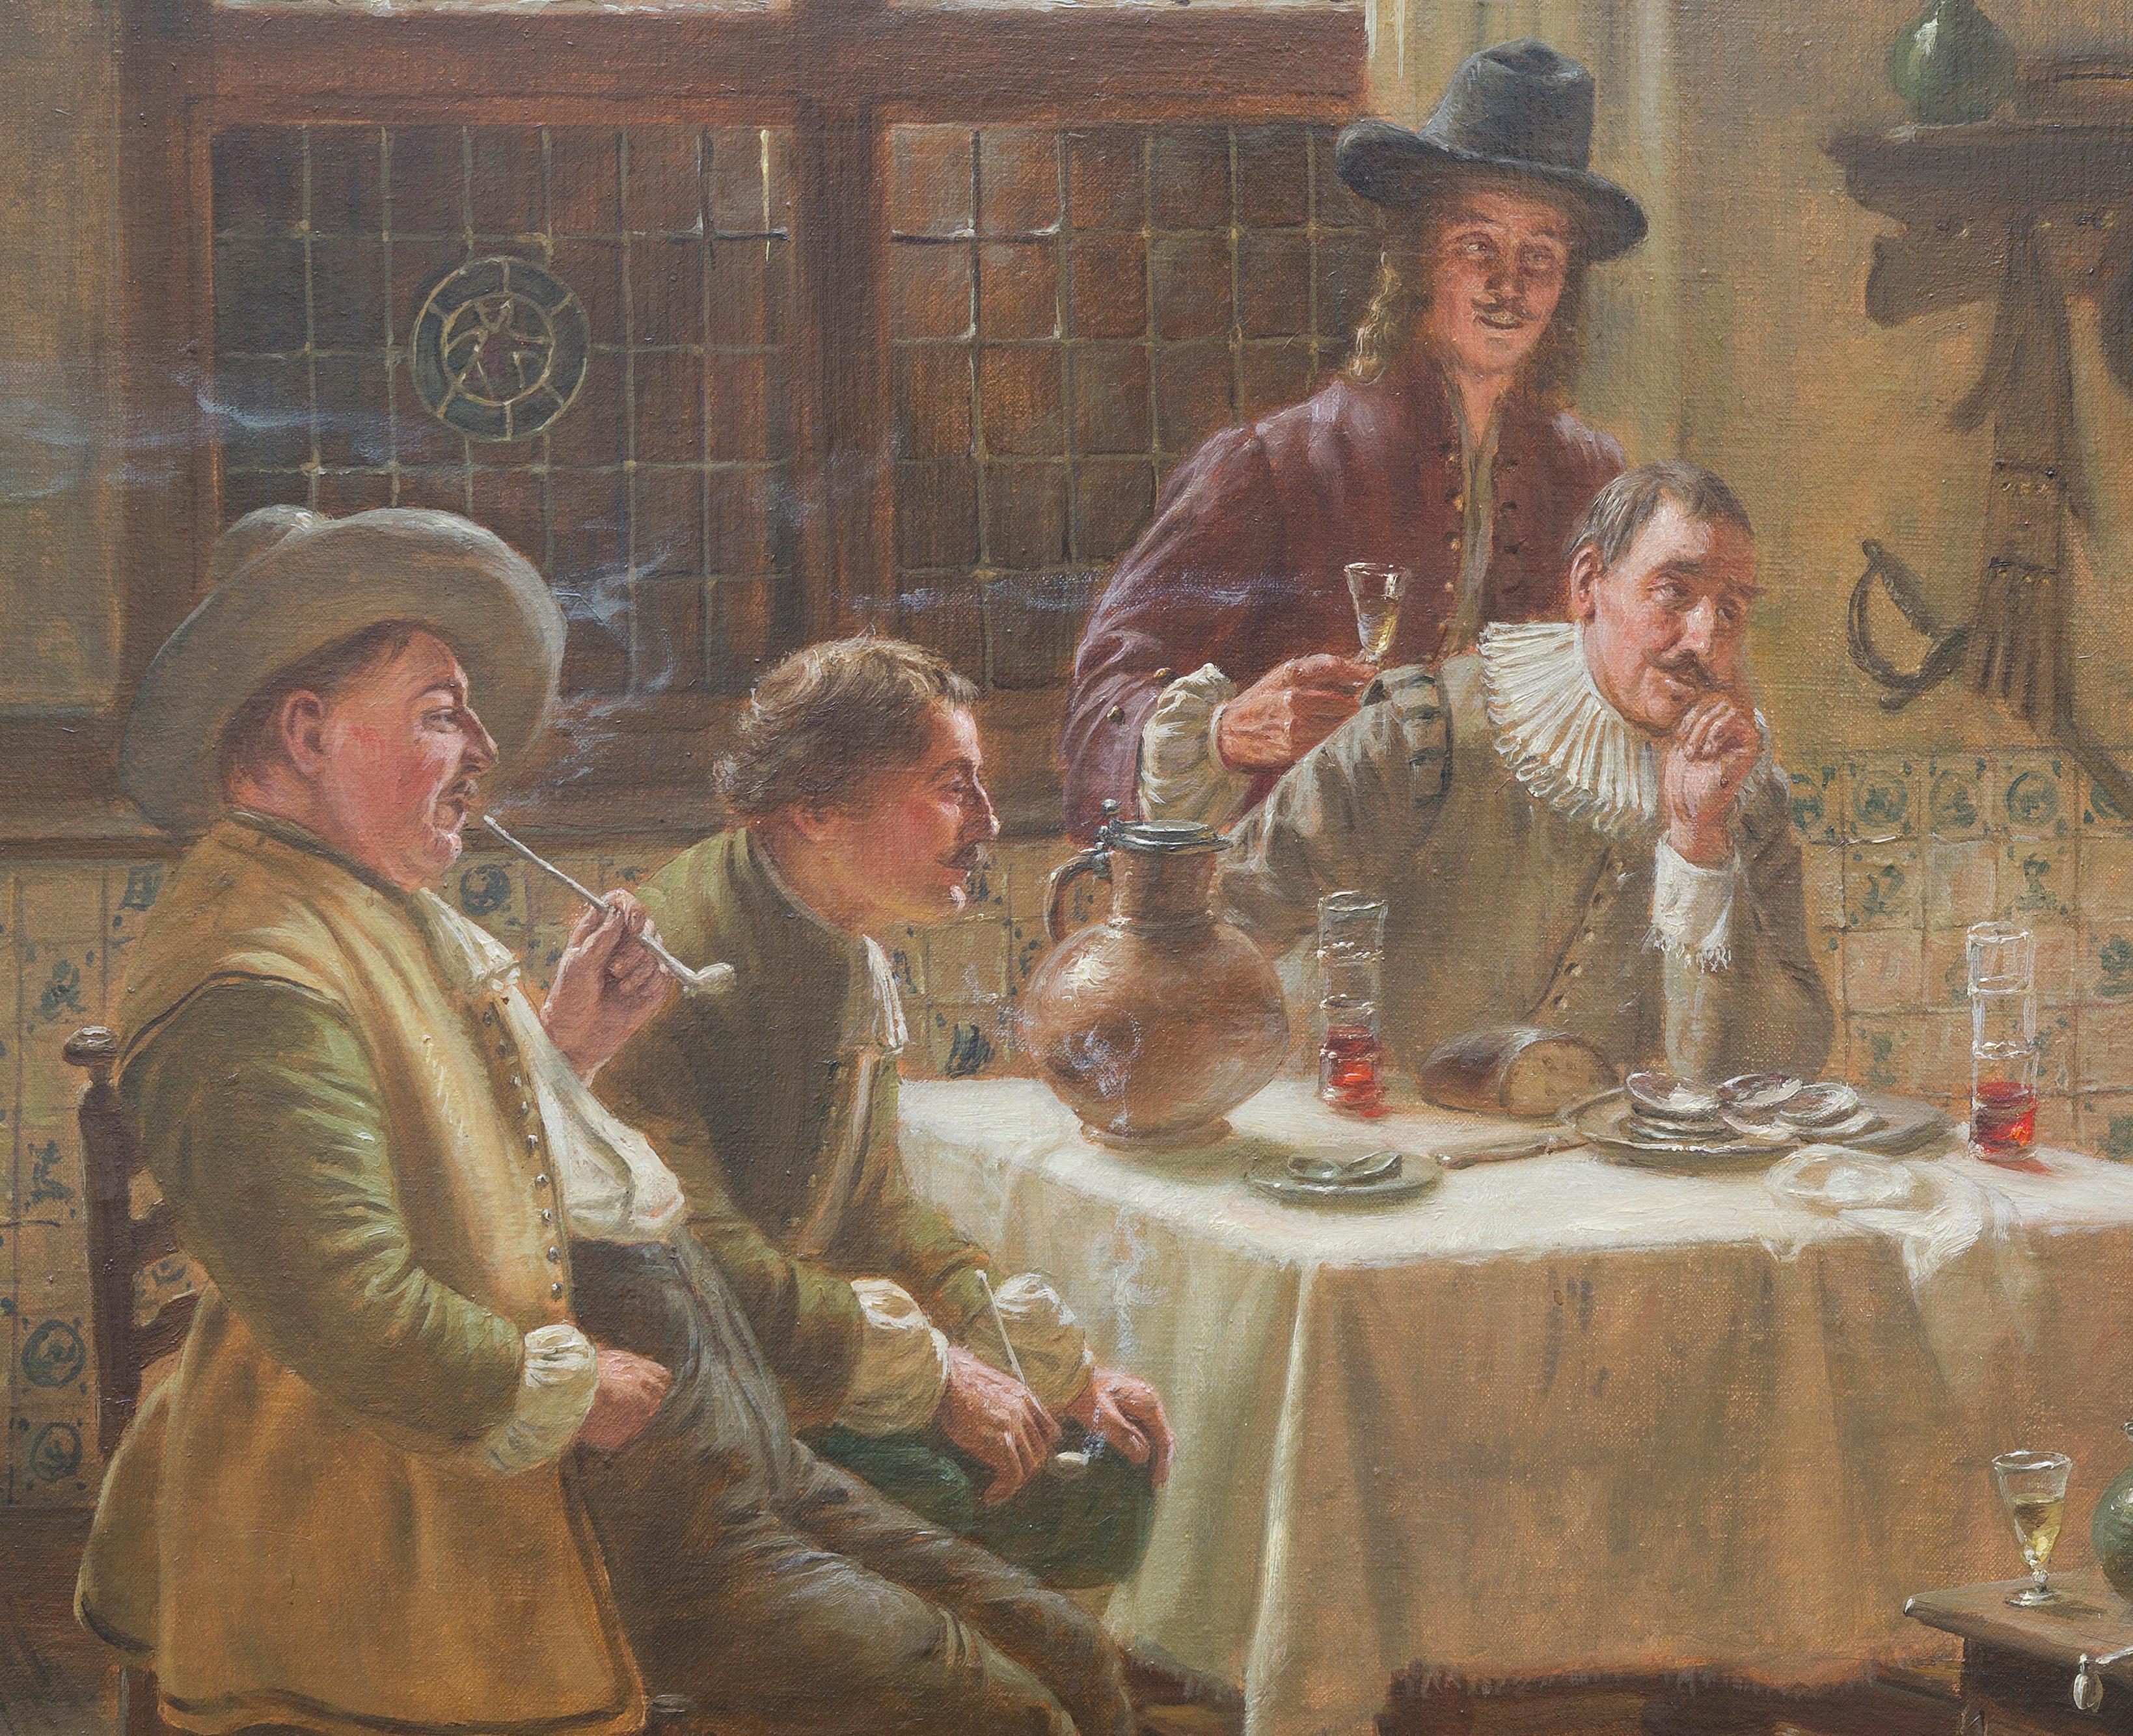 Fritz Wagner est un peintre allemand de natures mortes et de genre né à Munich, en Allemagne, le 20 juillet 1896. Il a étudié à l'Académie des beaux-arts de Munich auprès de Karl Roth et de Robert Seitz. Il a également été influencé par l'œuvre de